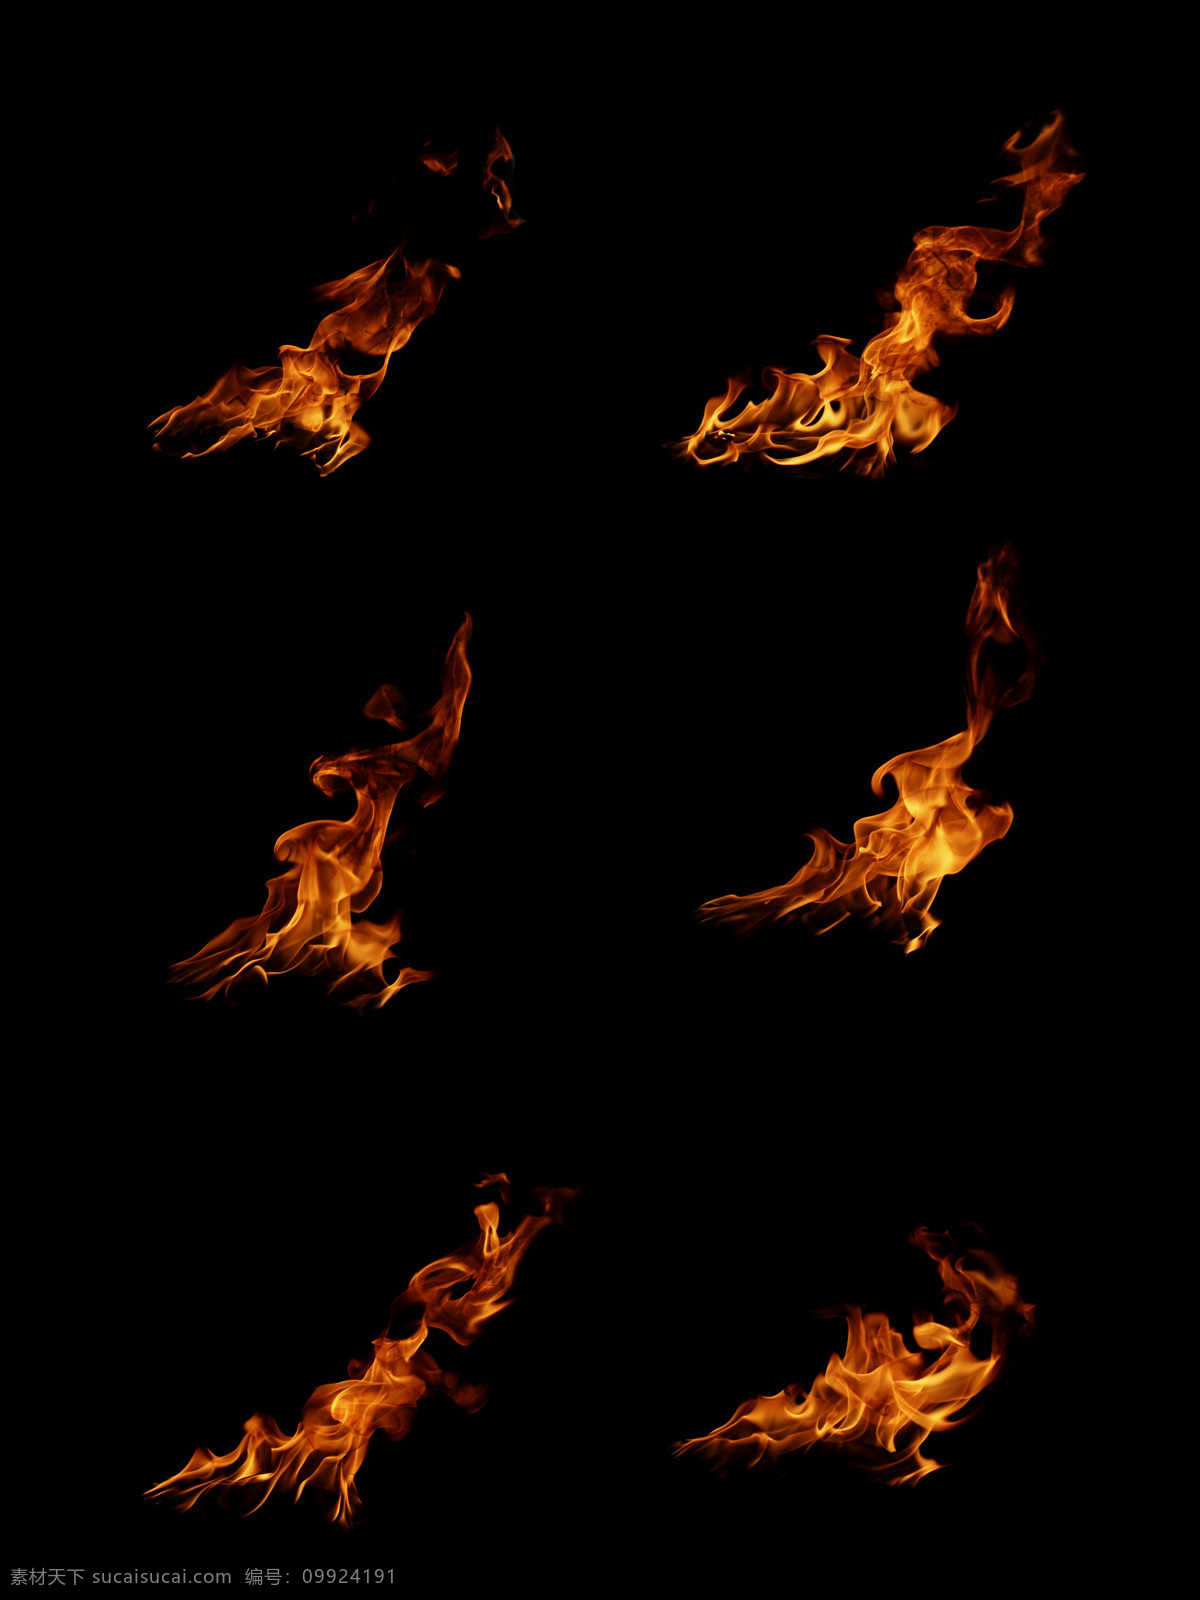 不同 形态 火焰 火苗 燃烧 火焰摄影 冰水烈火 火焰图片 生活百科